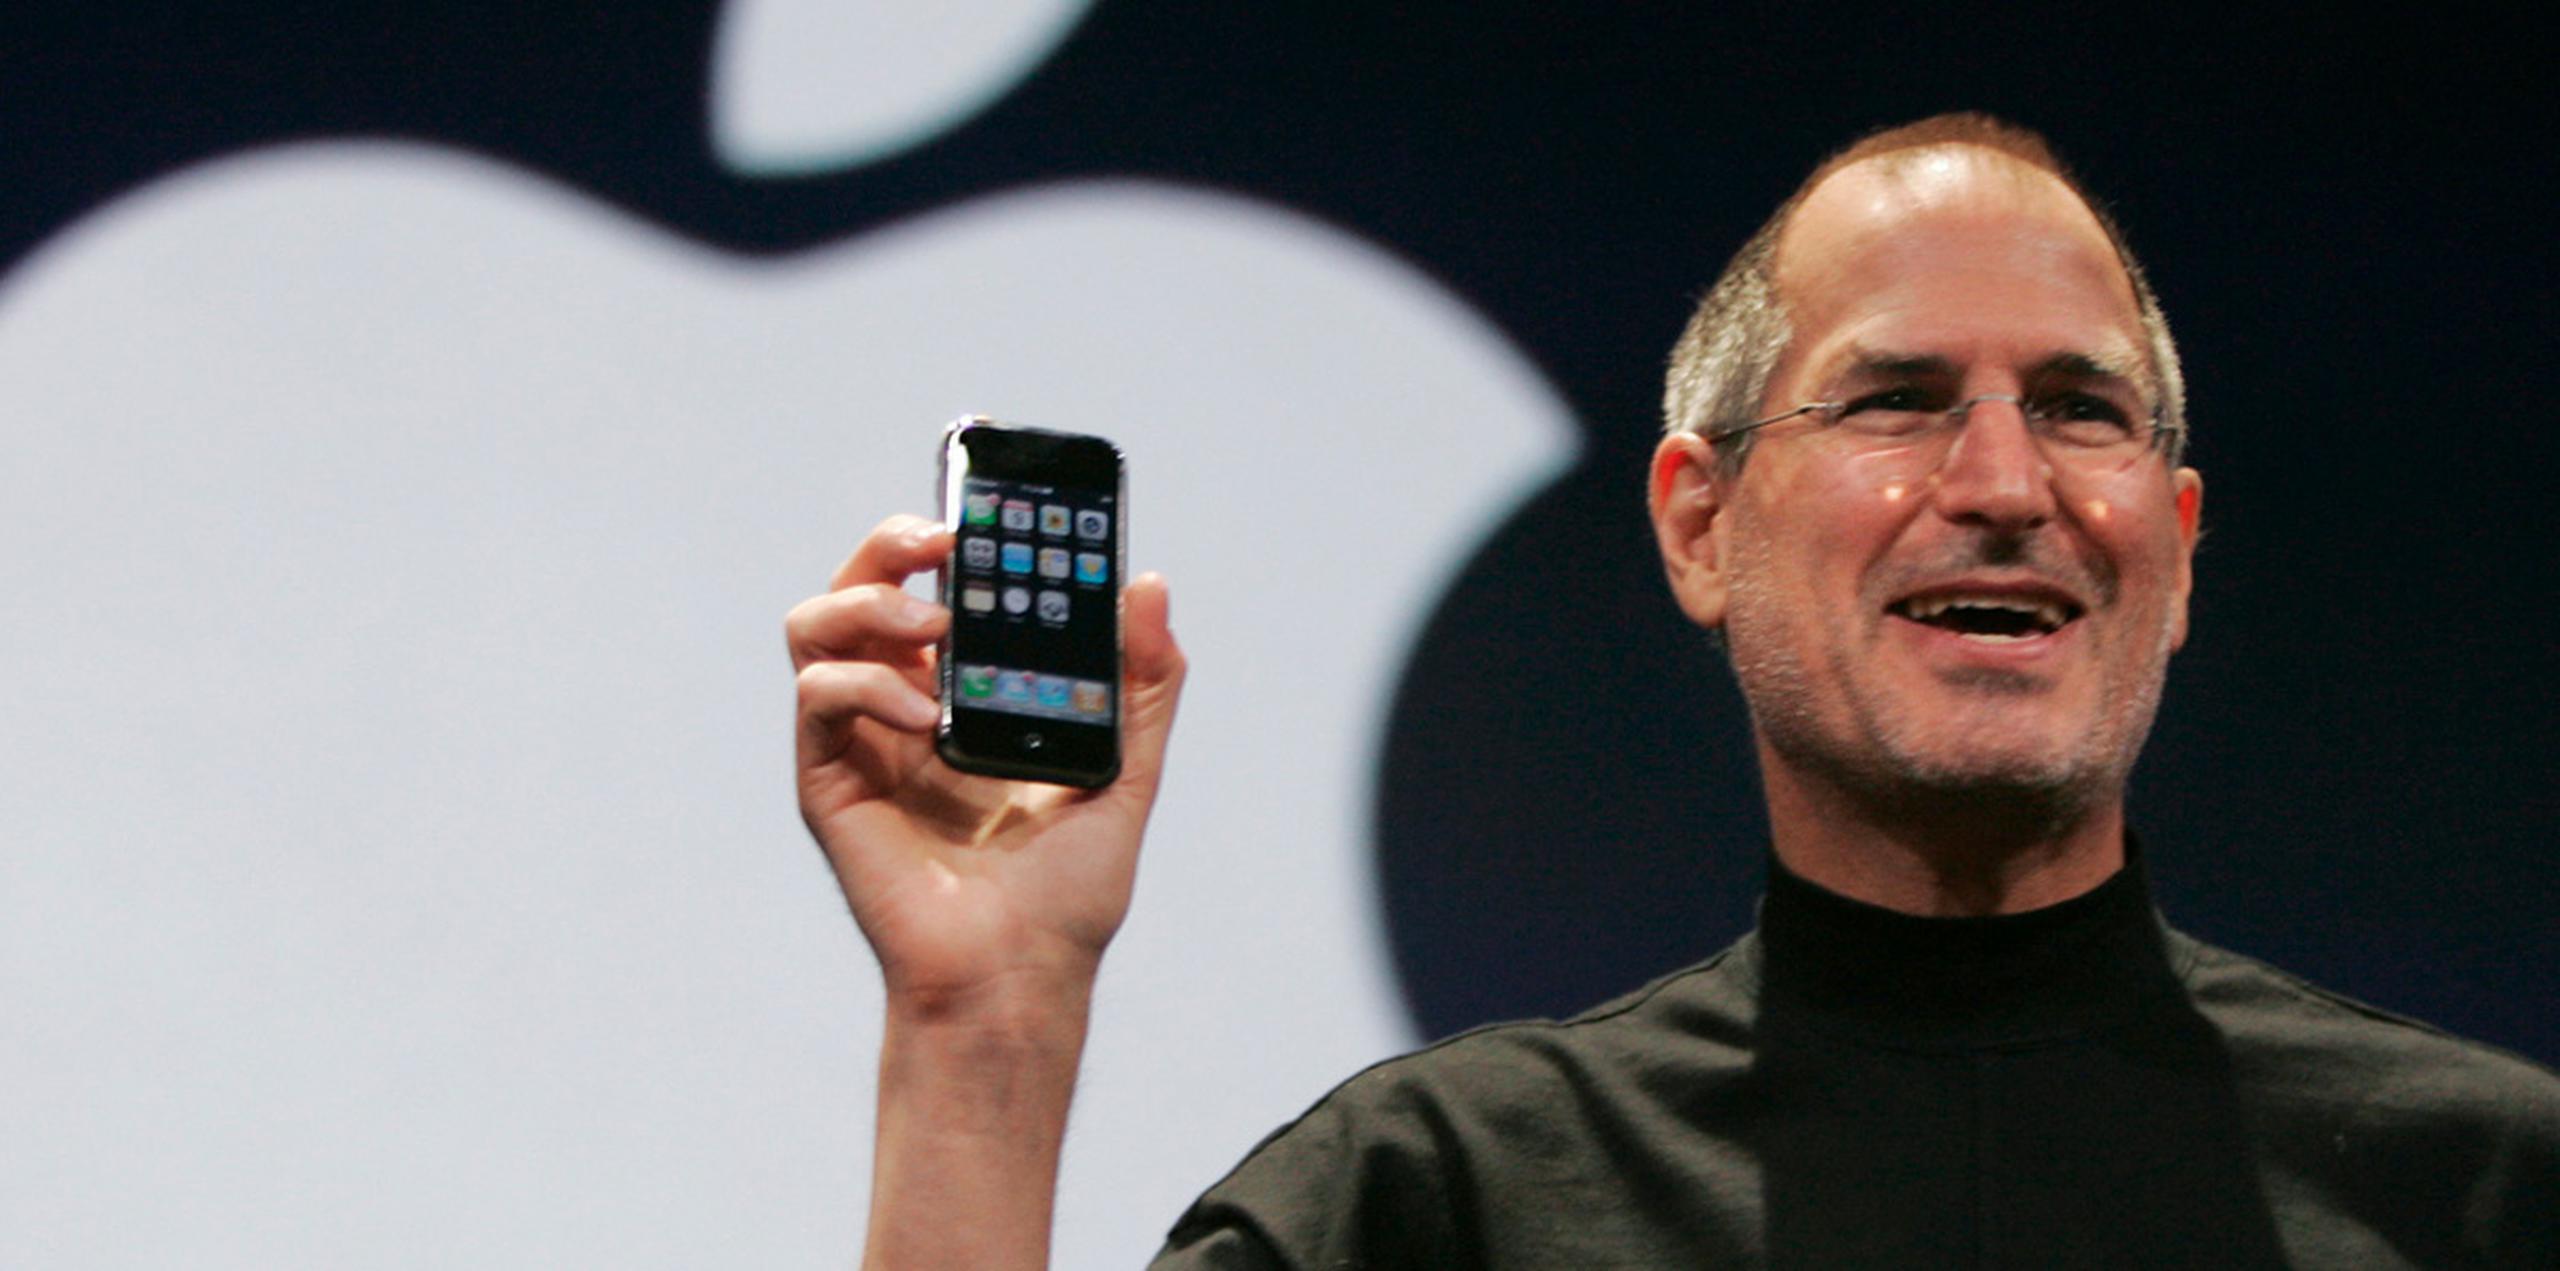 "Hoy vamos a hacer algo de historia. (...) Presentamos tres productos revolucionarios: un iPod con controles táctiles, un teléfono móvil revolucionario y un dispositivo avanzado de conexión a internet. No son tres dispositivos distintos, es uno sólo y lo hemos llamado iPhone", anunciaba el entonces Steve Jobs. (Archivo)